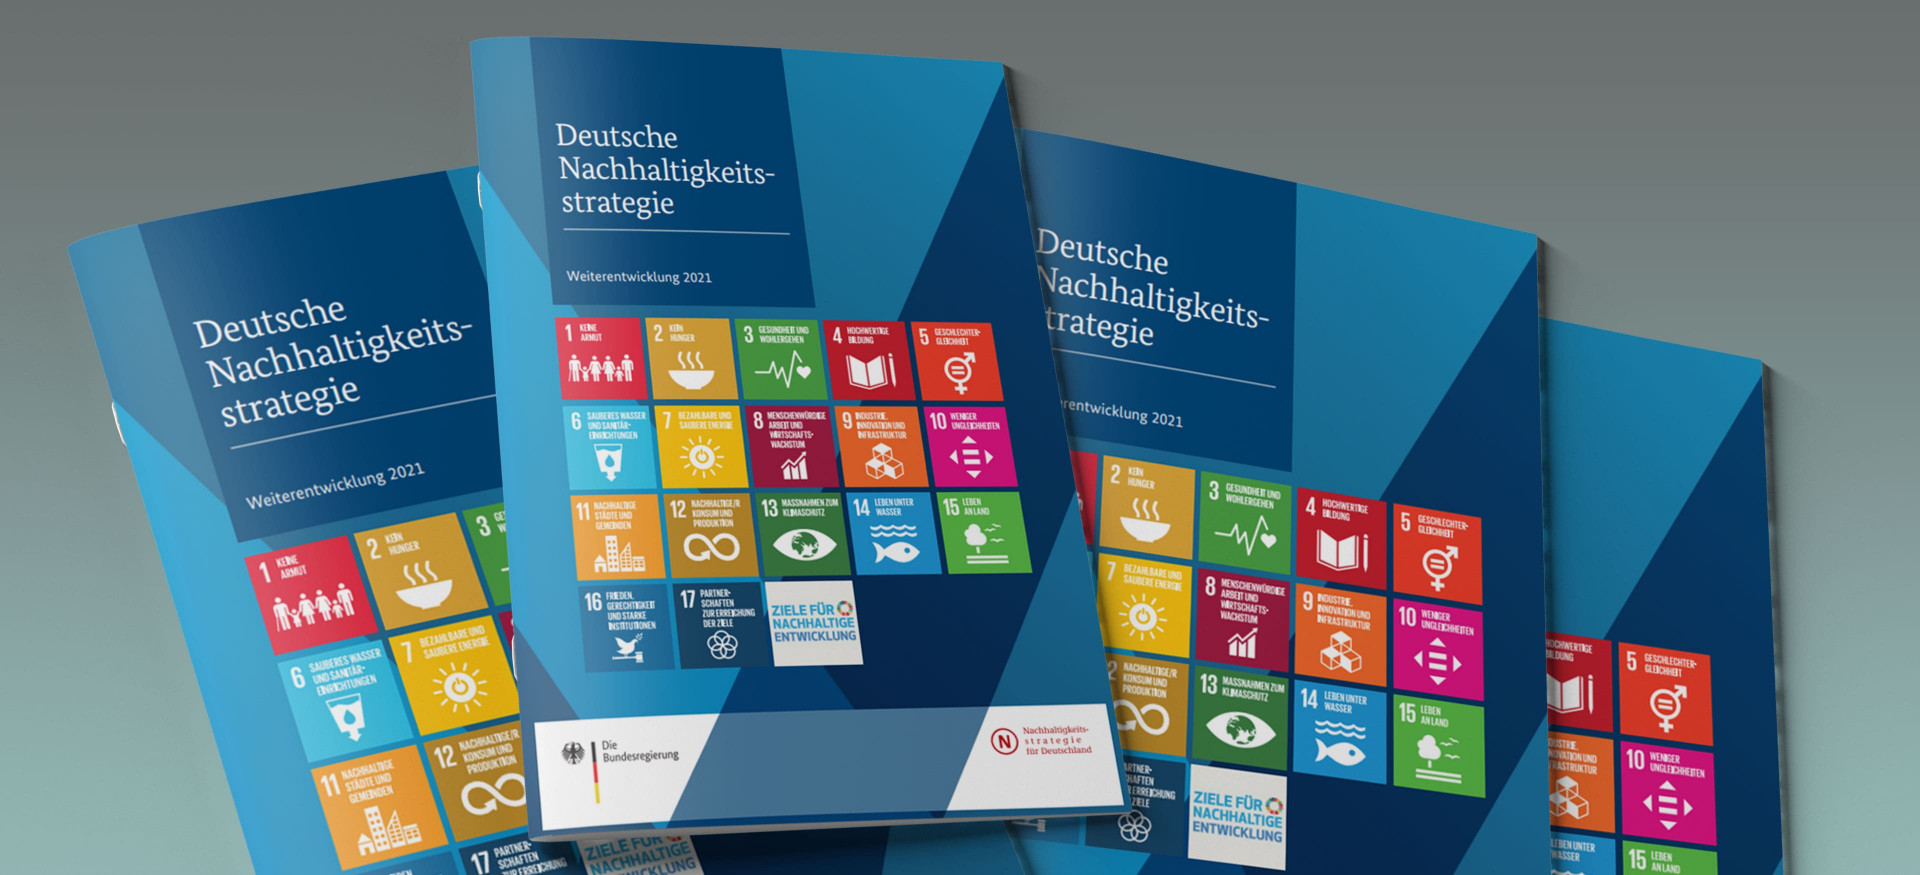 Das Bild zeigt einen Stapel Broschüren mit dem Titel "Deutsche Nachhaltigkeitsstrategie".